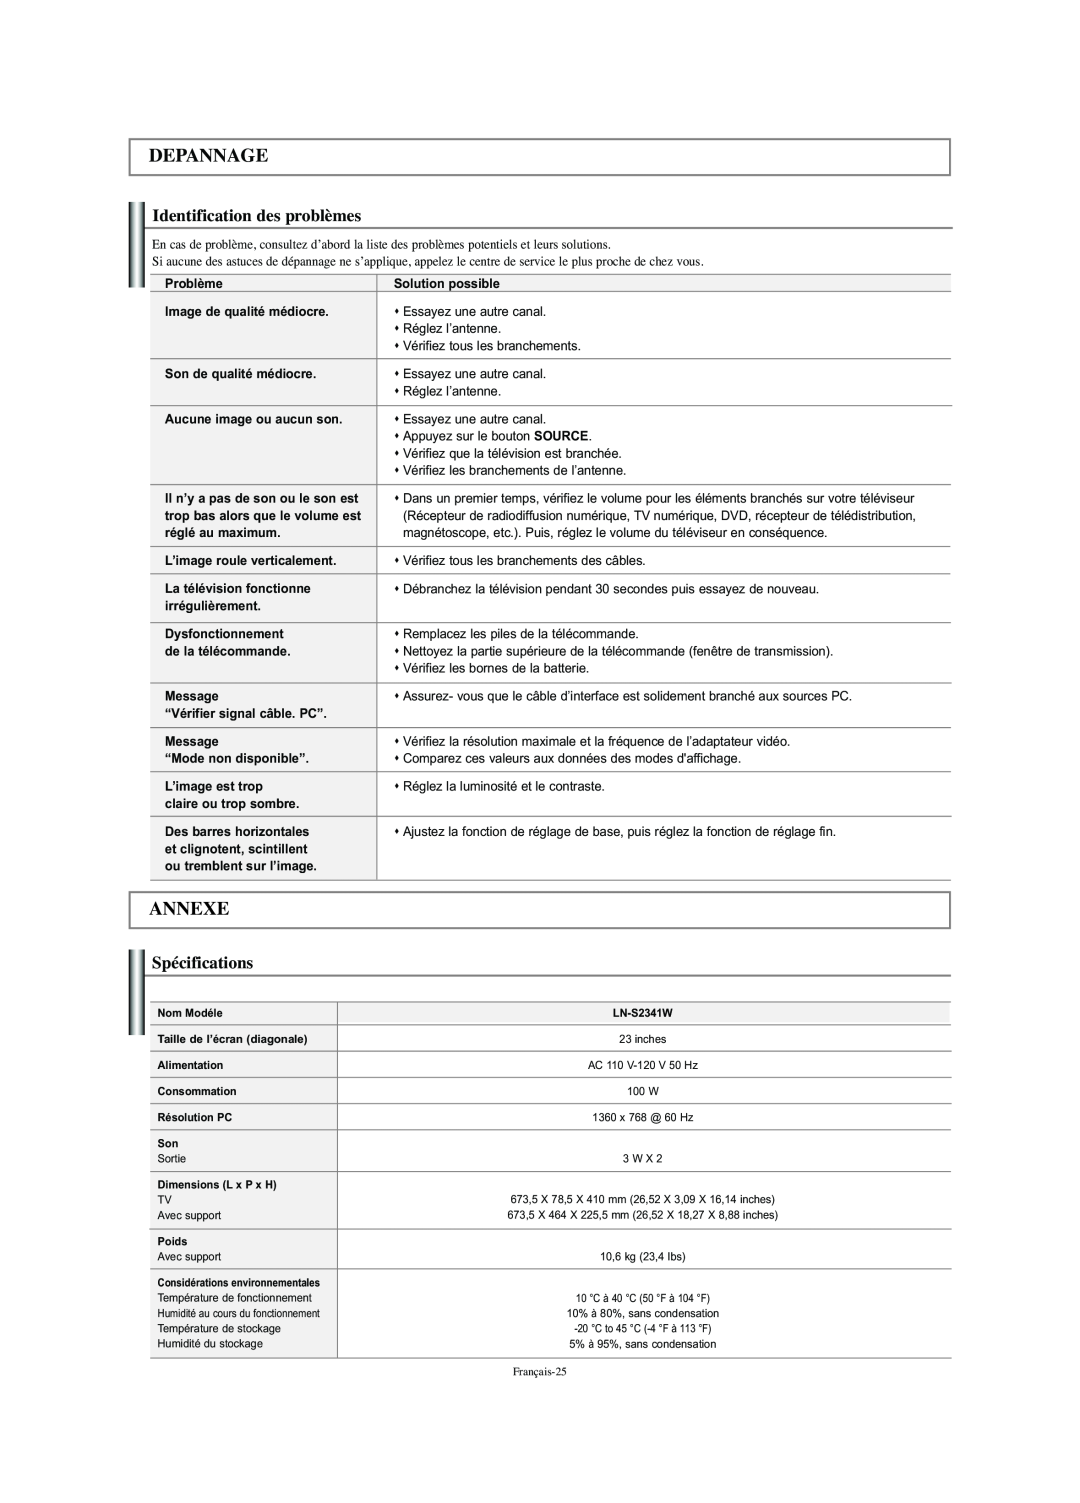 Samsung LN-S2341W manual Depannage, Annexe, Identification des problèmes, Spécifications 